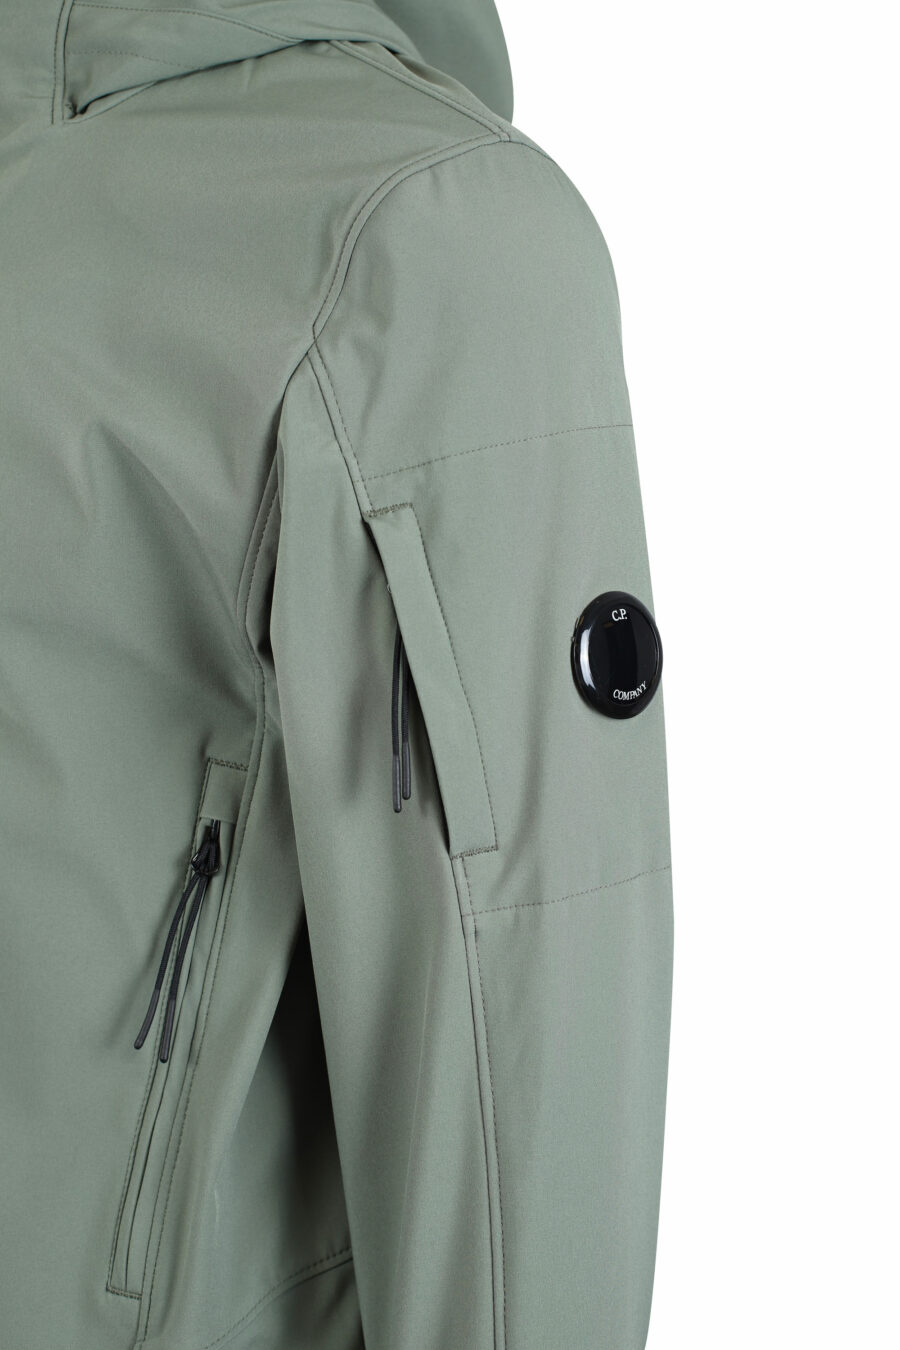 Casaco verde militar com capuz e bolso lateral com mini-logotipo circular - IMG 2687